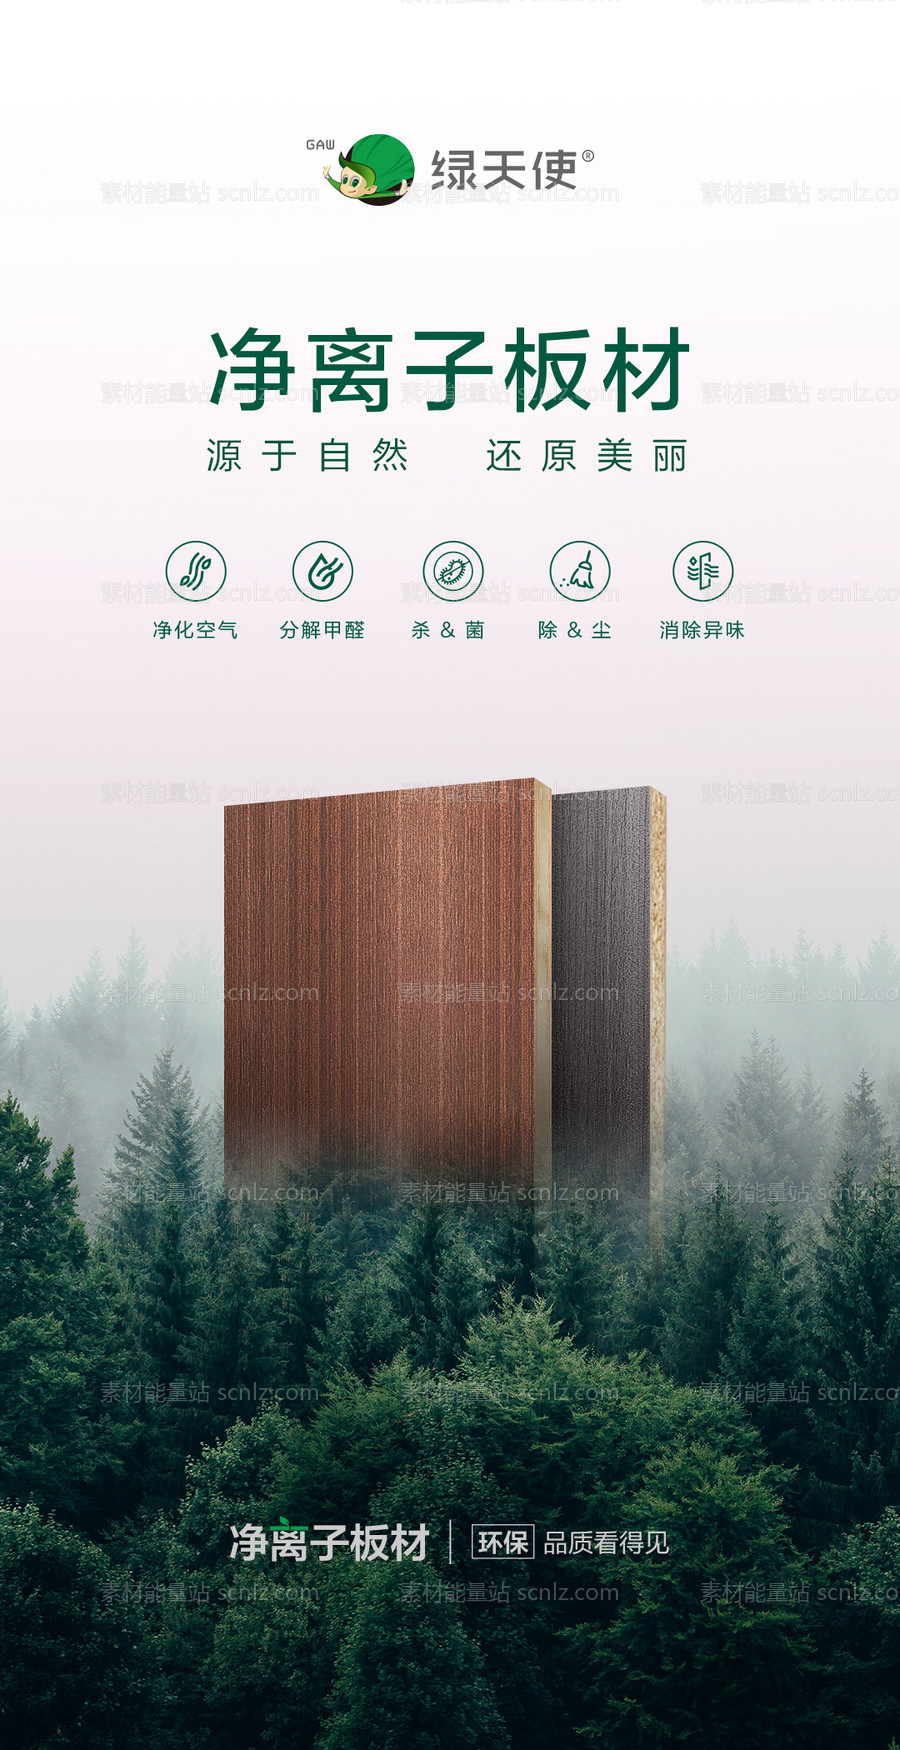 素材能量站-板材介绍生态板海报